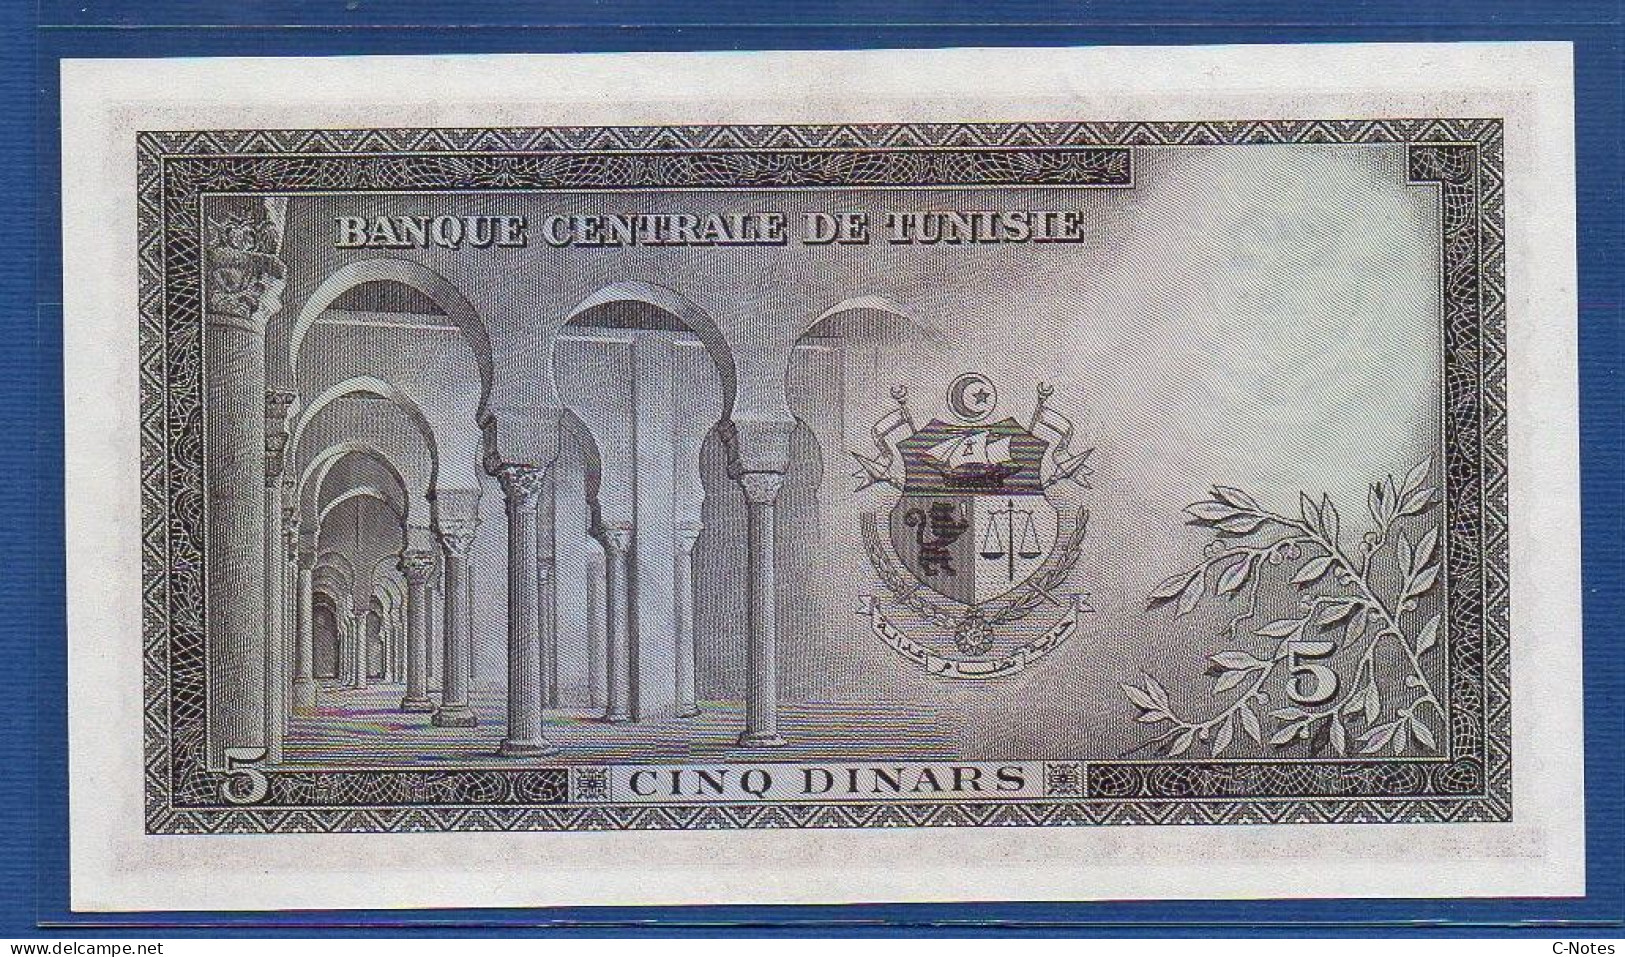 TUNISIA - P.59 – 5 Dinars ND (1958) XF/aUNC, S/n C/1 171795 - Tunisie